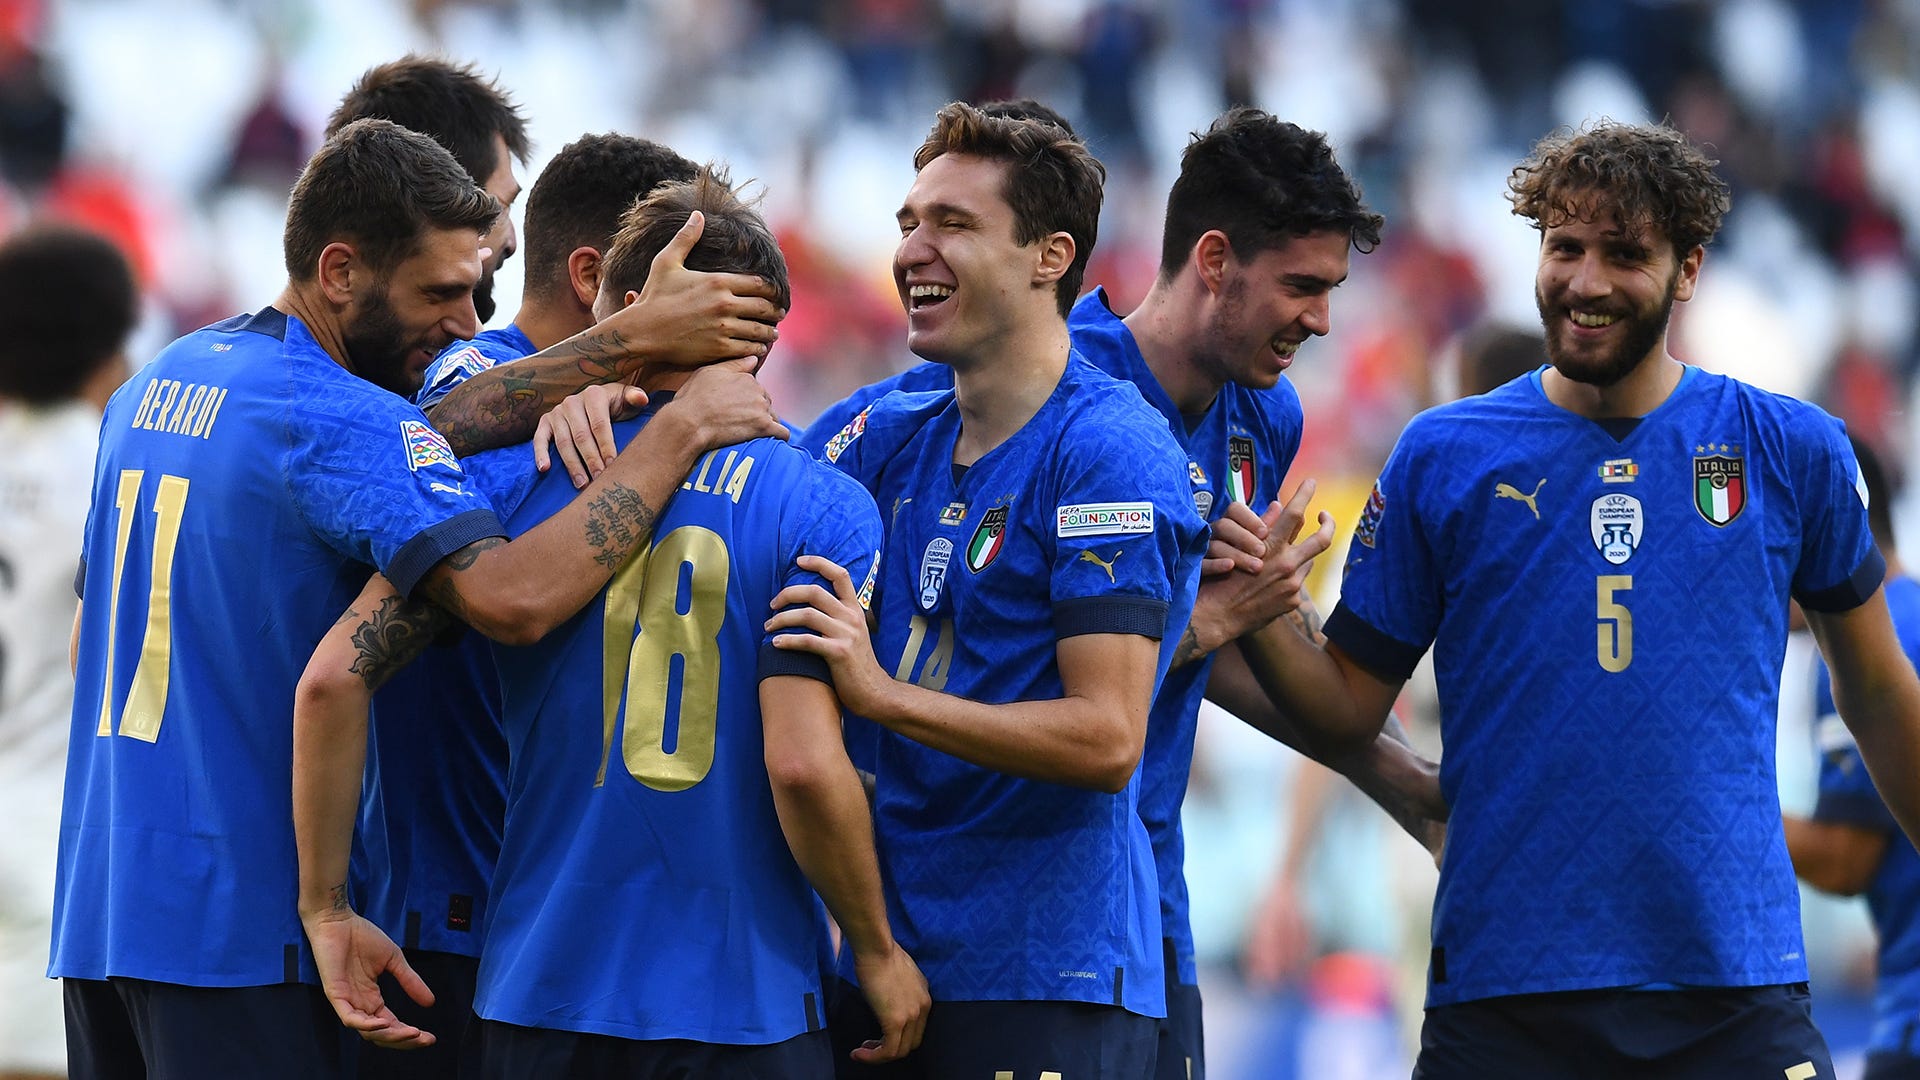 イタリアがベルギーを撃破 ネーションズリーグ3位の座を手に Goal Com 日本